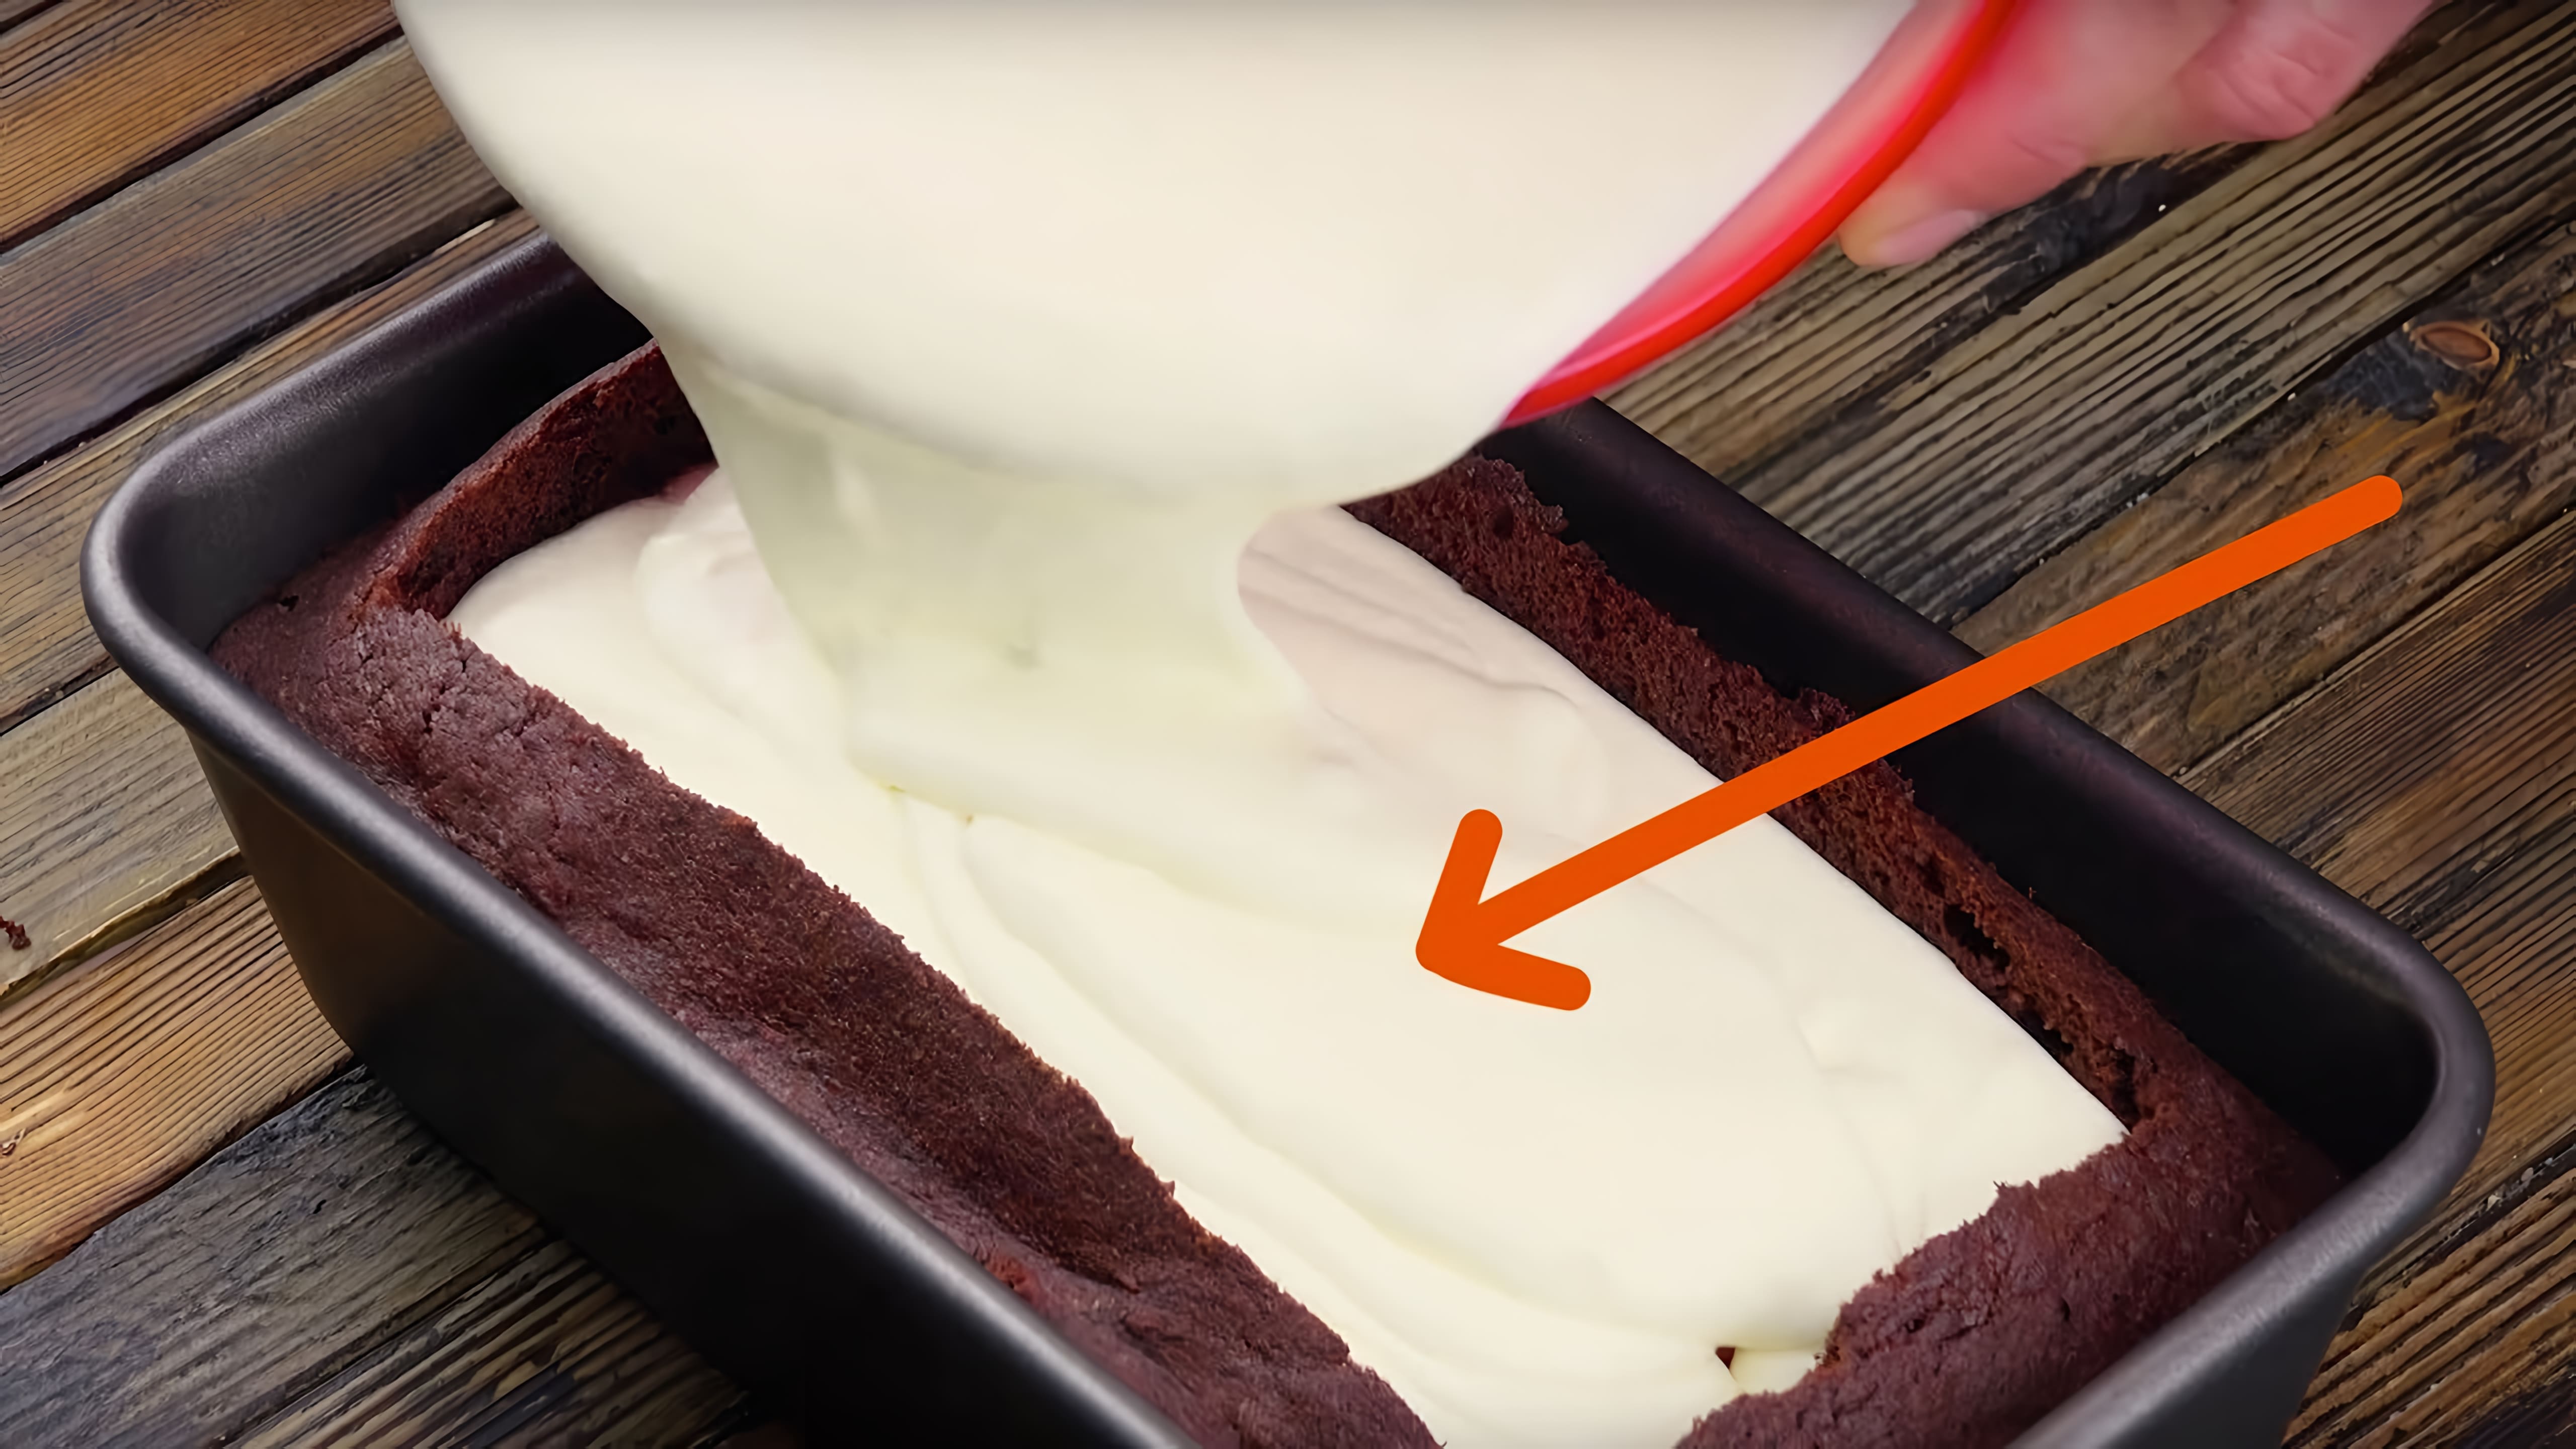 Видео: Под кремом ждет сюрприз, от которого этот нежный торт еще прекраснее.